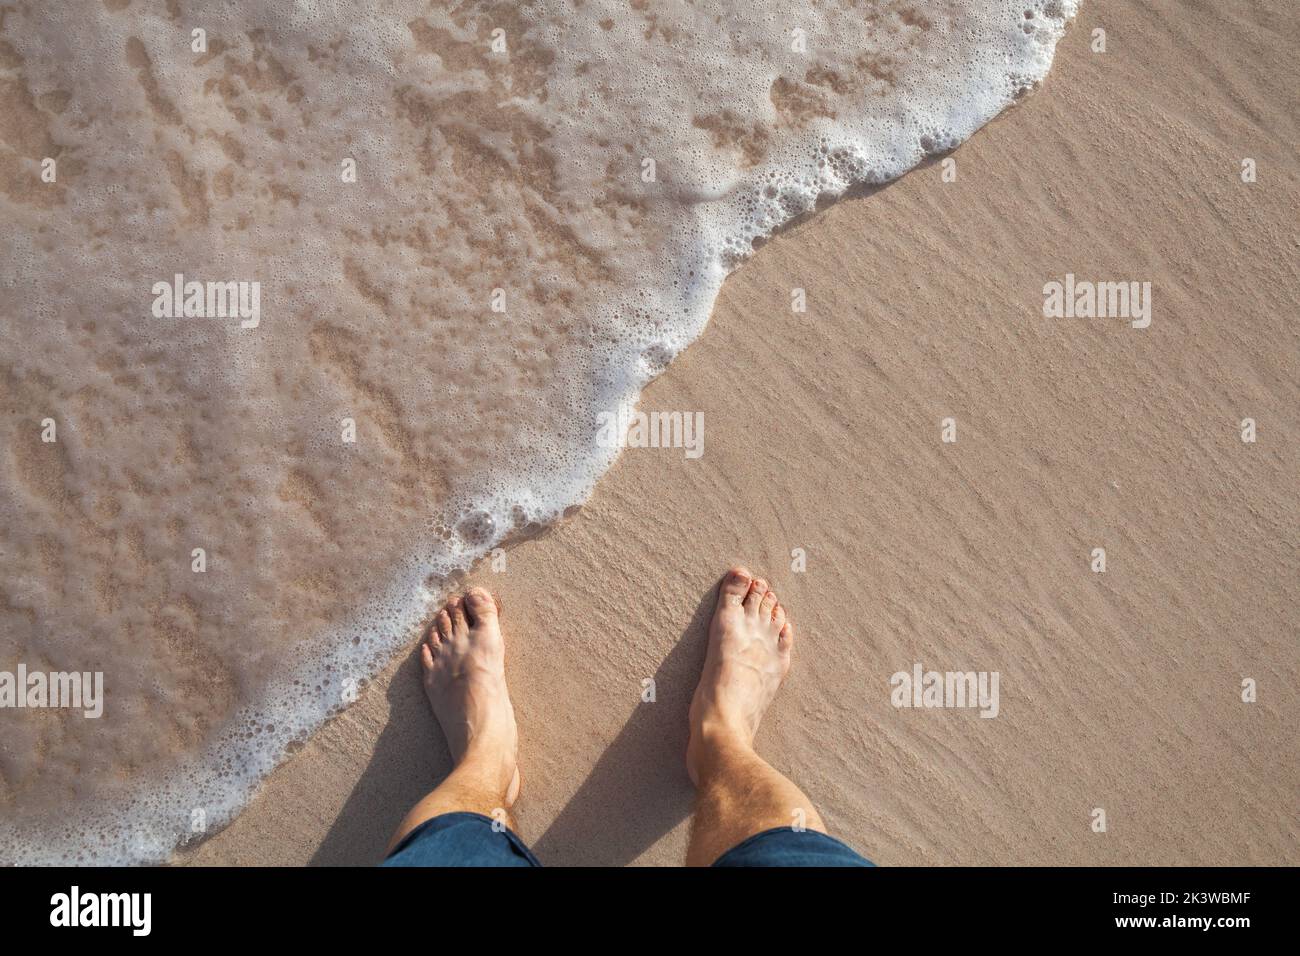 Piernas descalzas de un hombre parado en una playa en la arena costera húmeda en un día soleado, vista superior Foto de stock